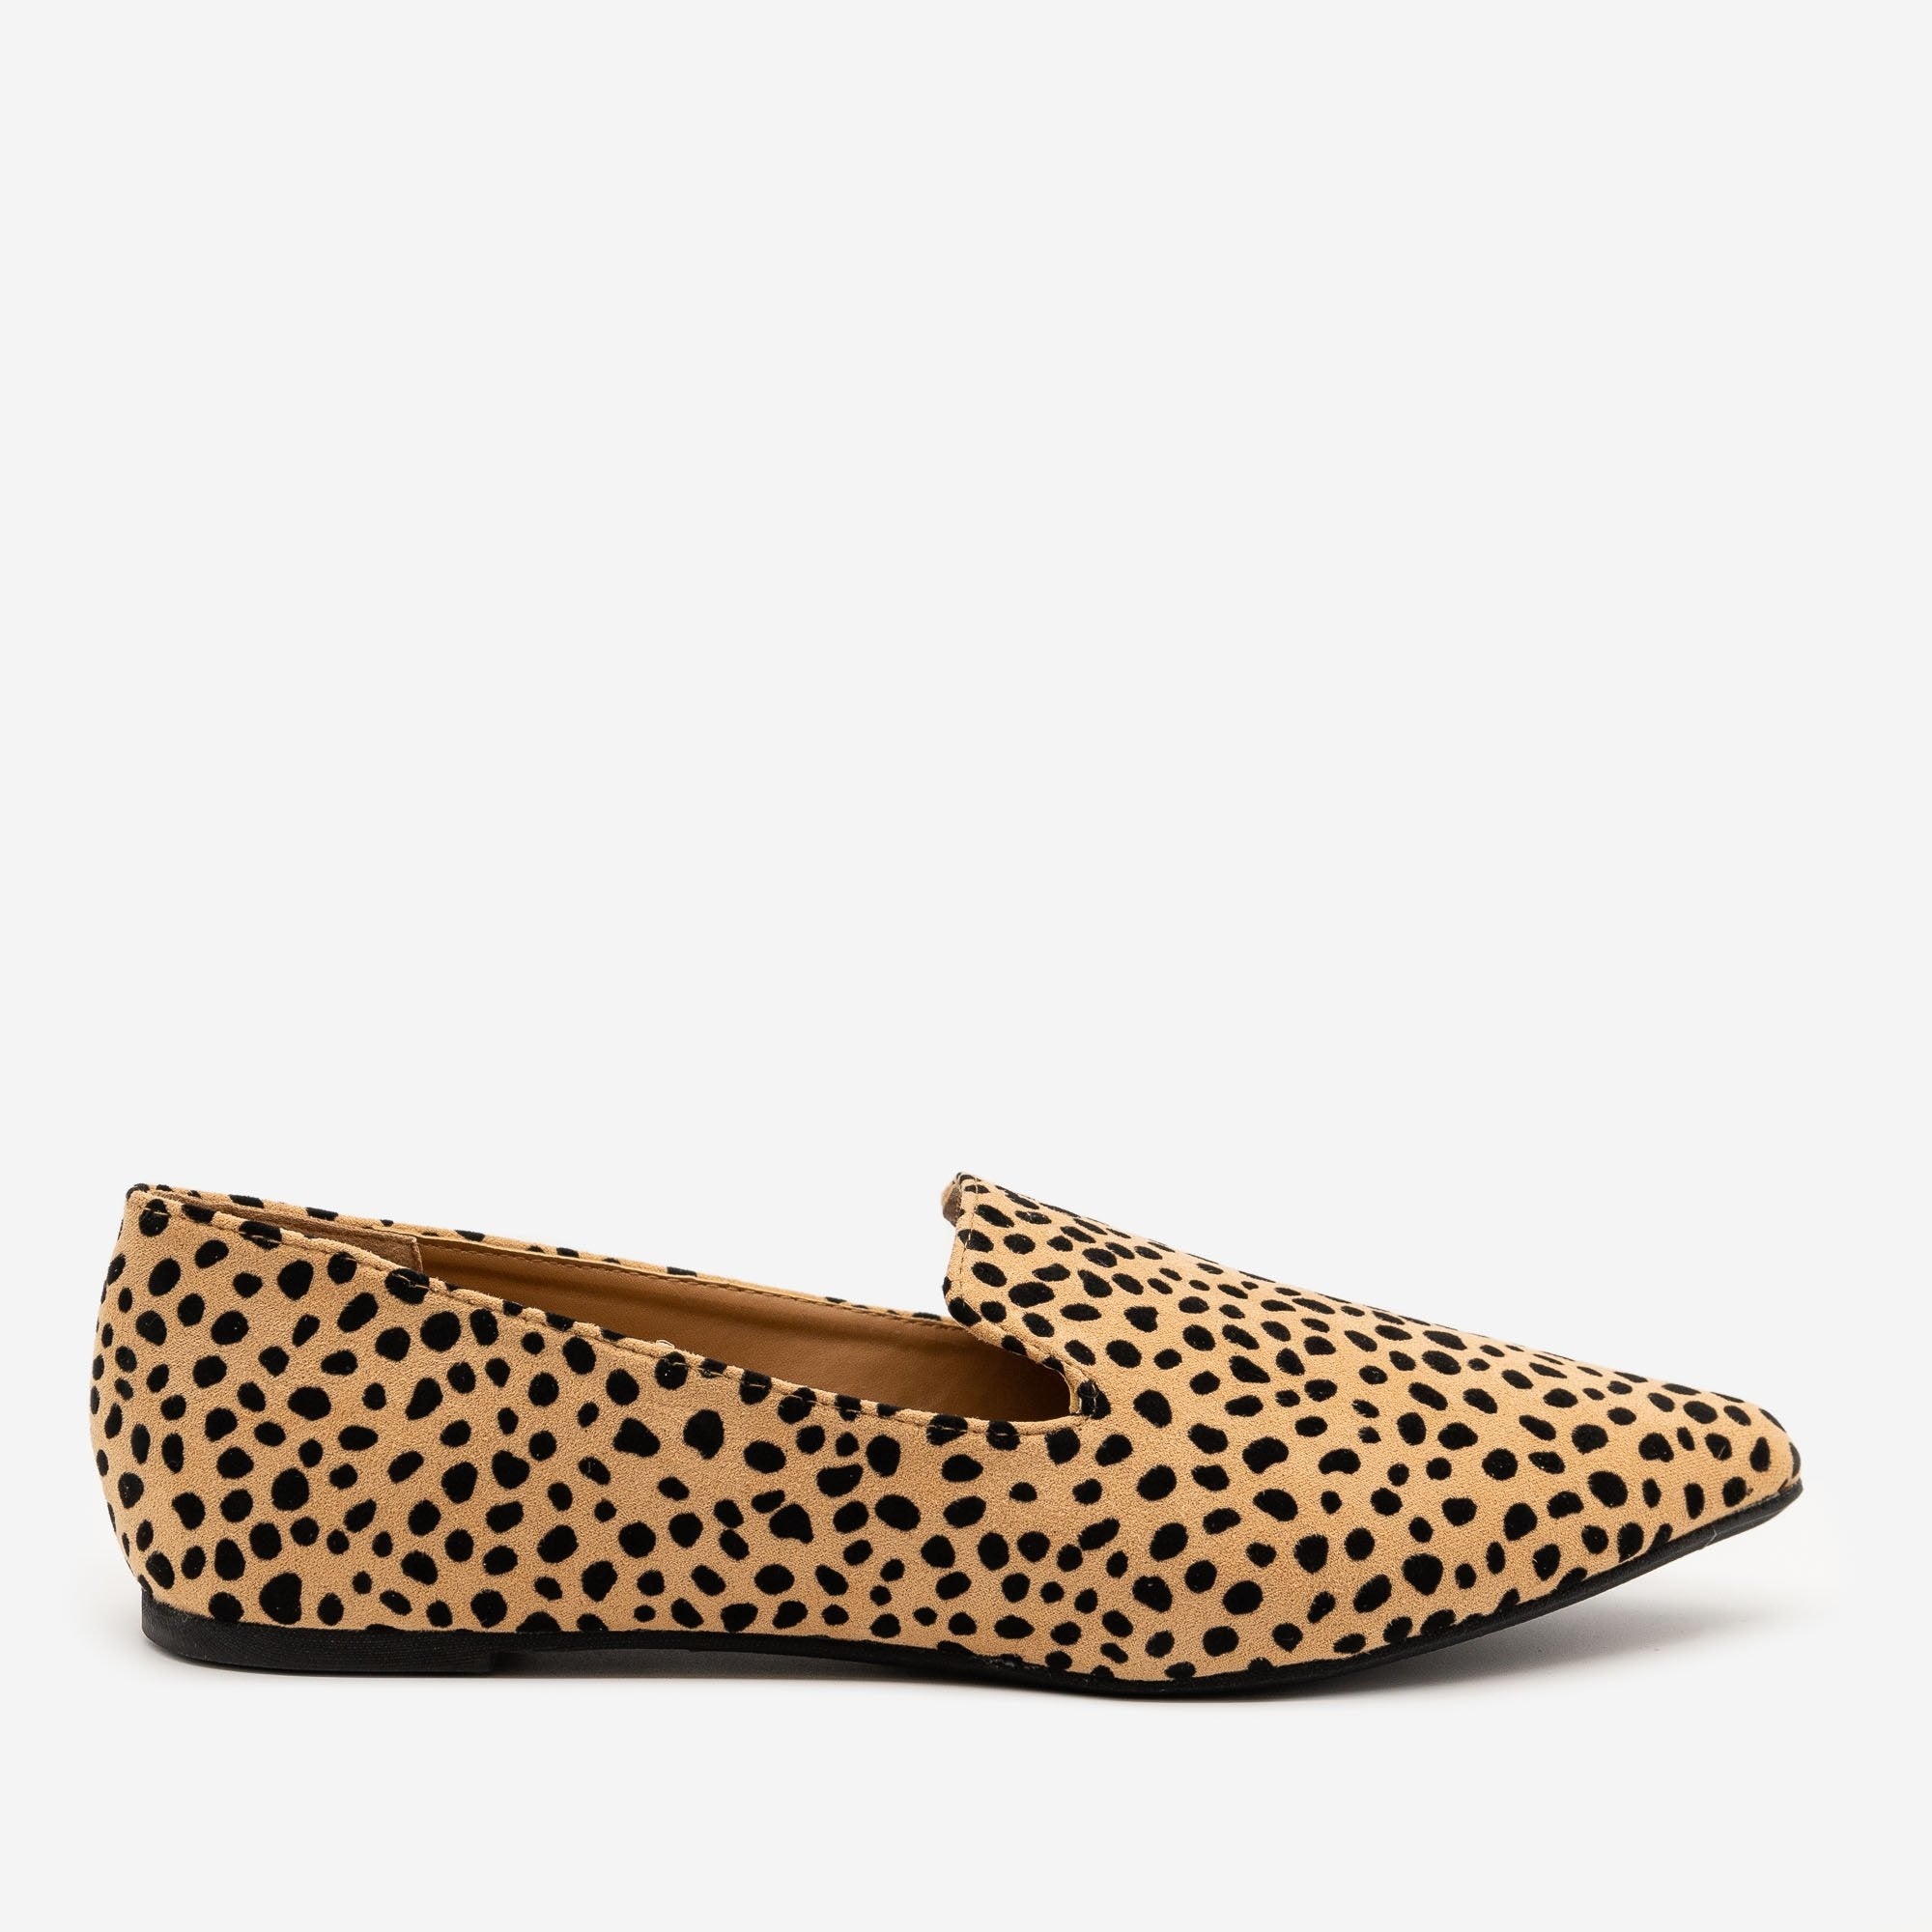 leopard print shoes next